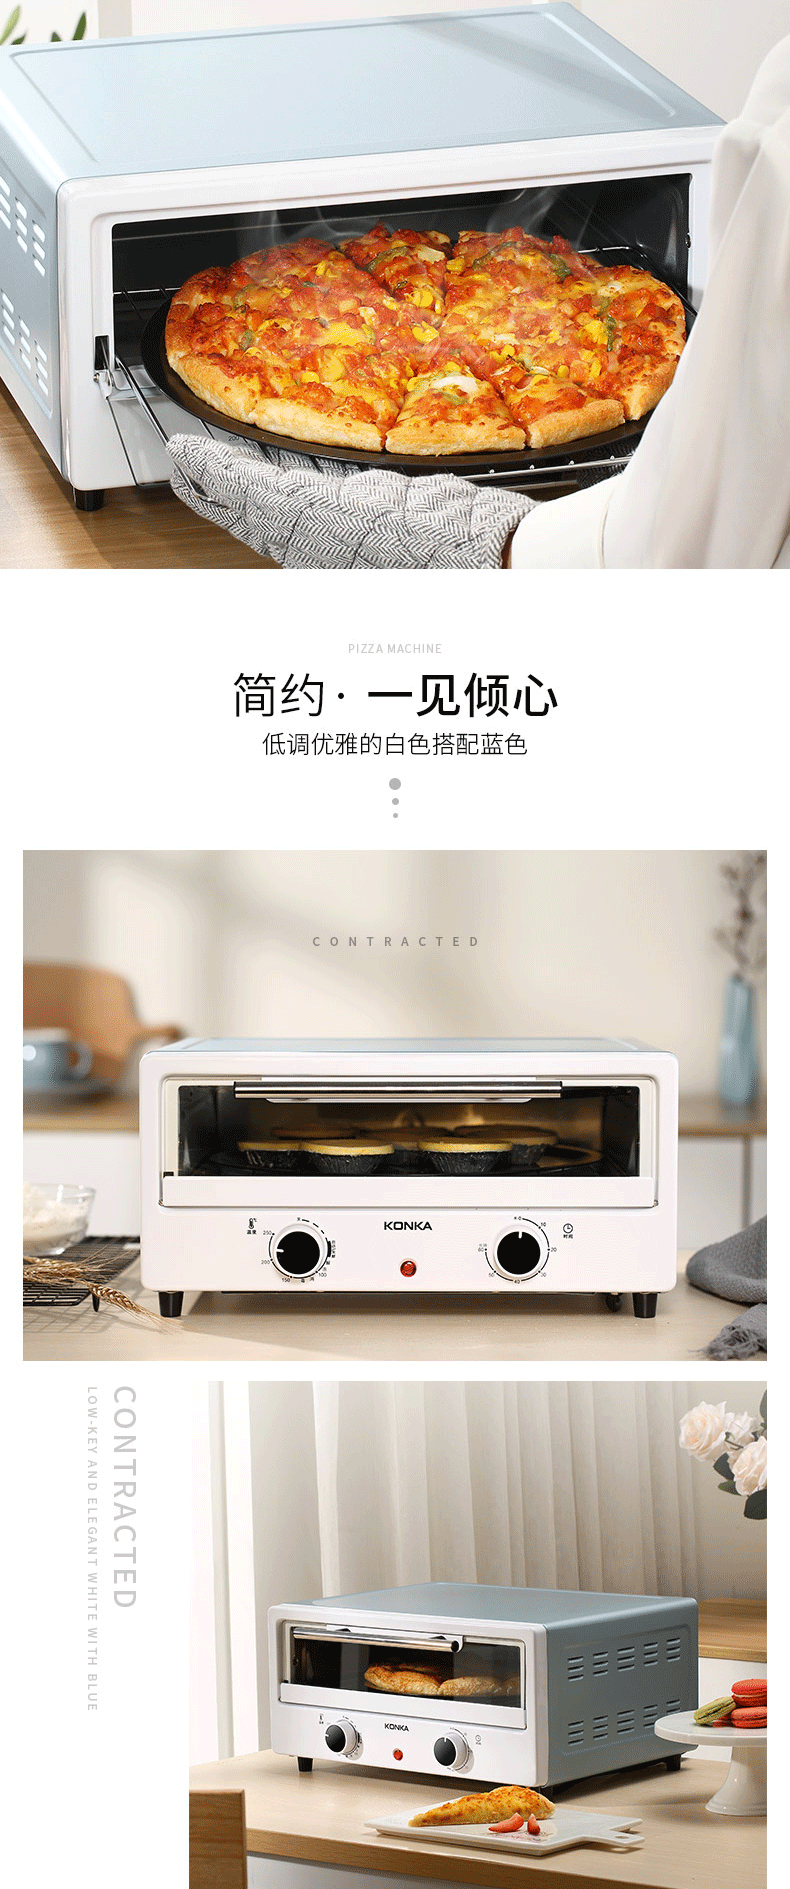 康佳/KONKA 披萨机 电烤箱 多功能家用烘焙烤箱12L烘烤蛋糕面包饼干机披萨机KGKX-1213